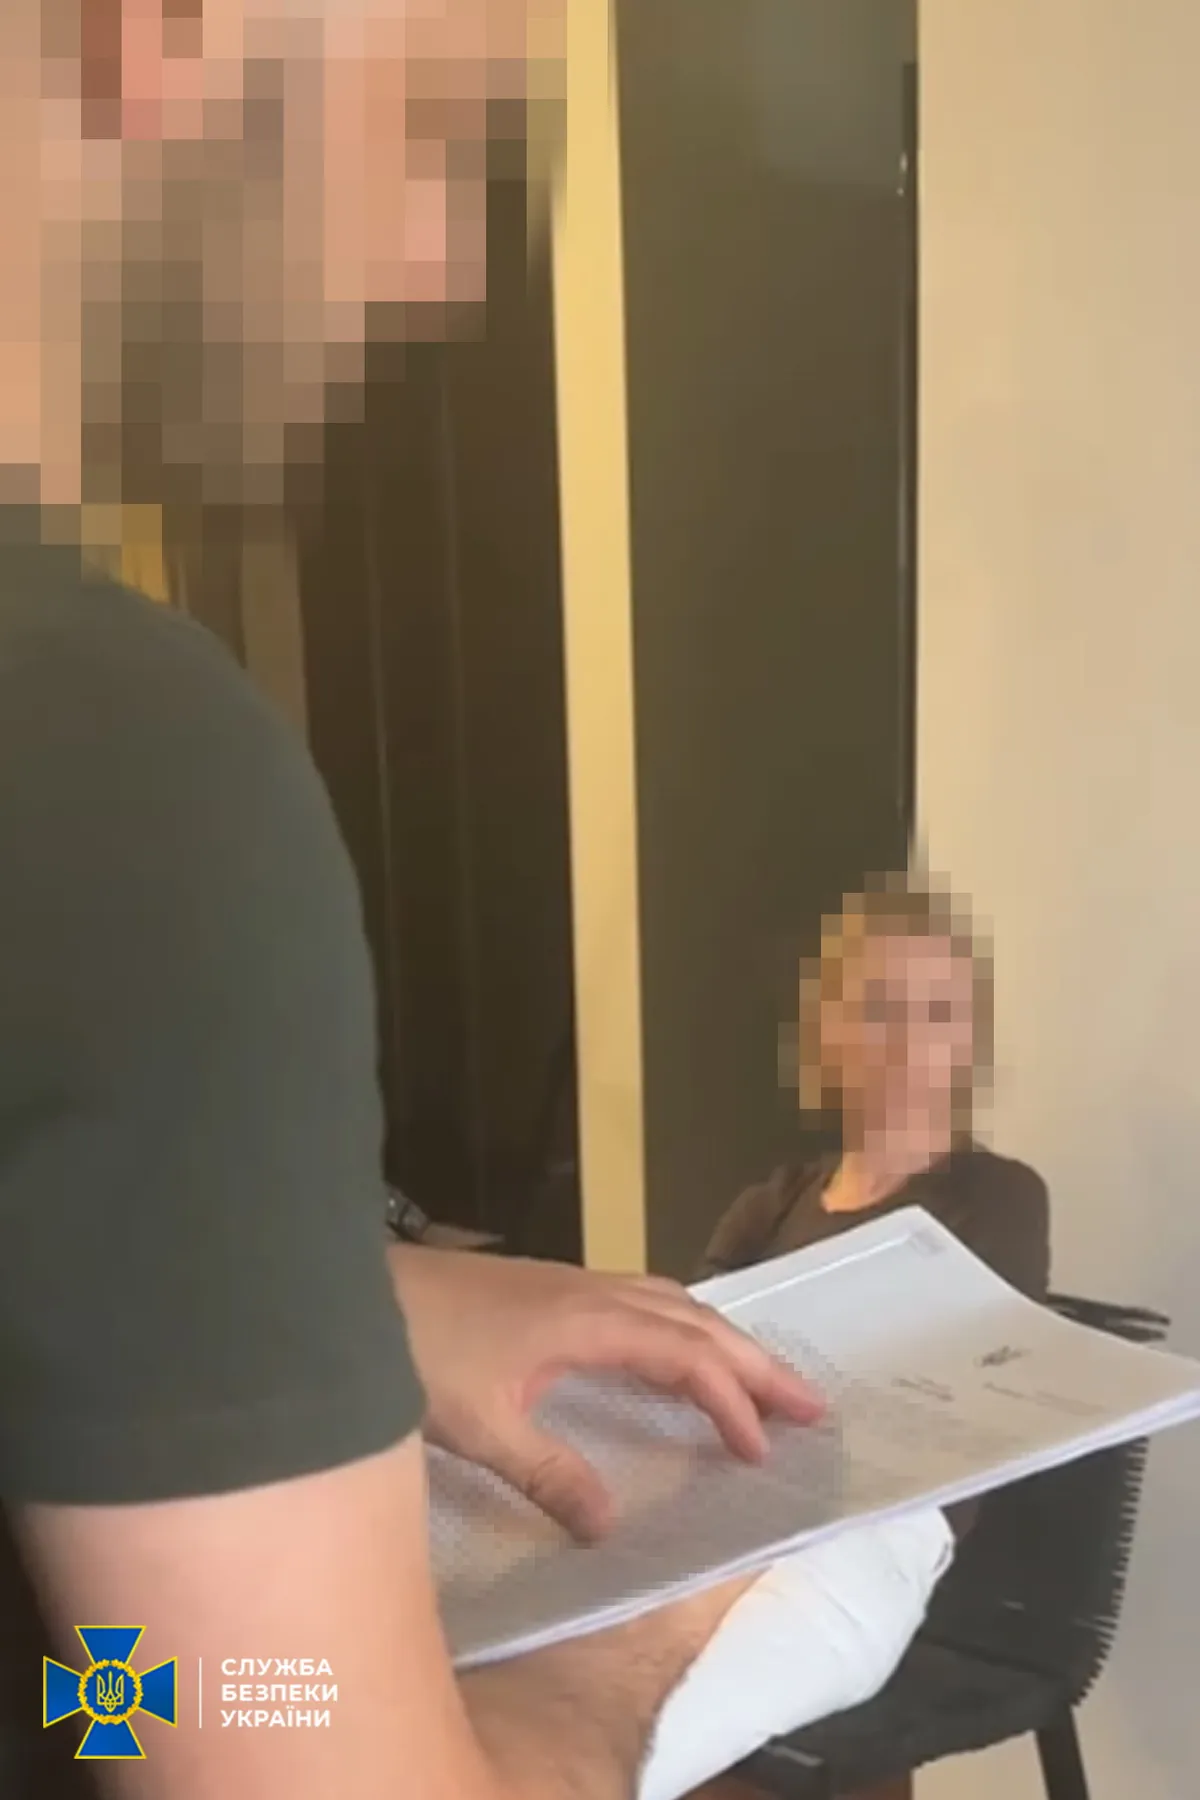 У Києві затримали доньку ексмера Полтави, яка співпрацювала з "виборчим штабом" партії путіна